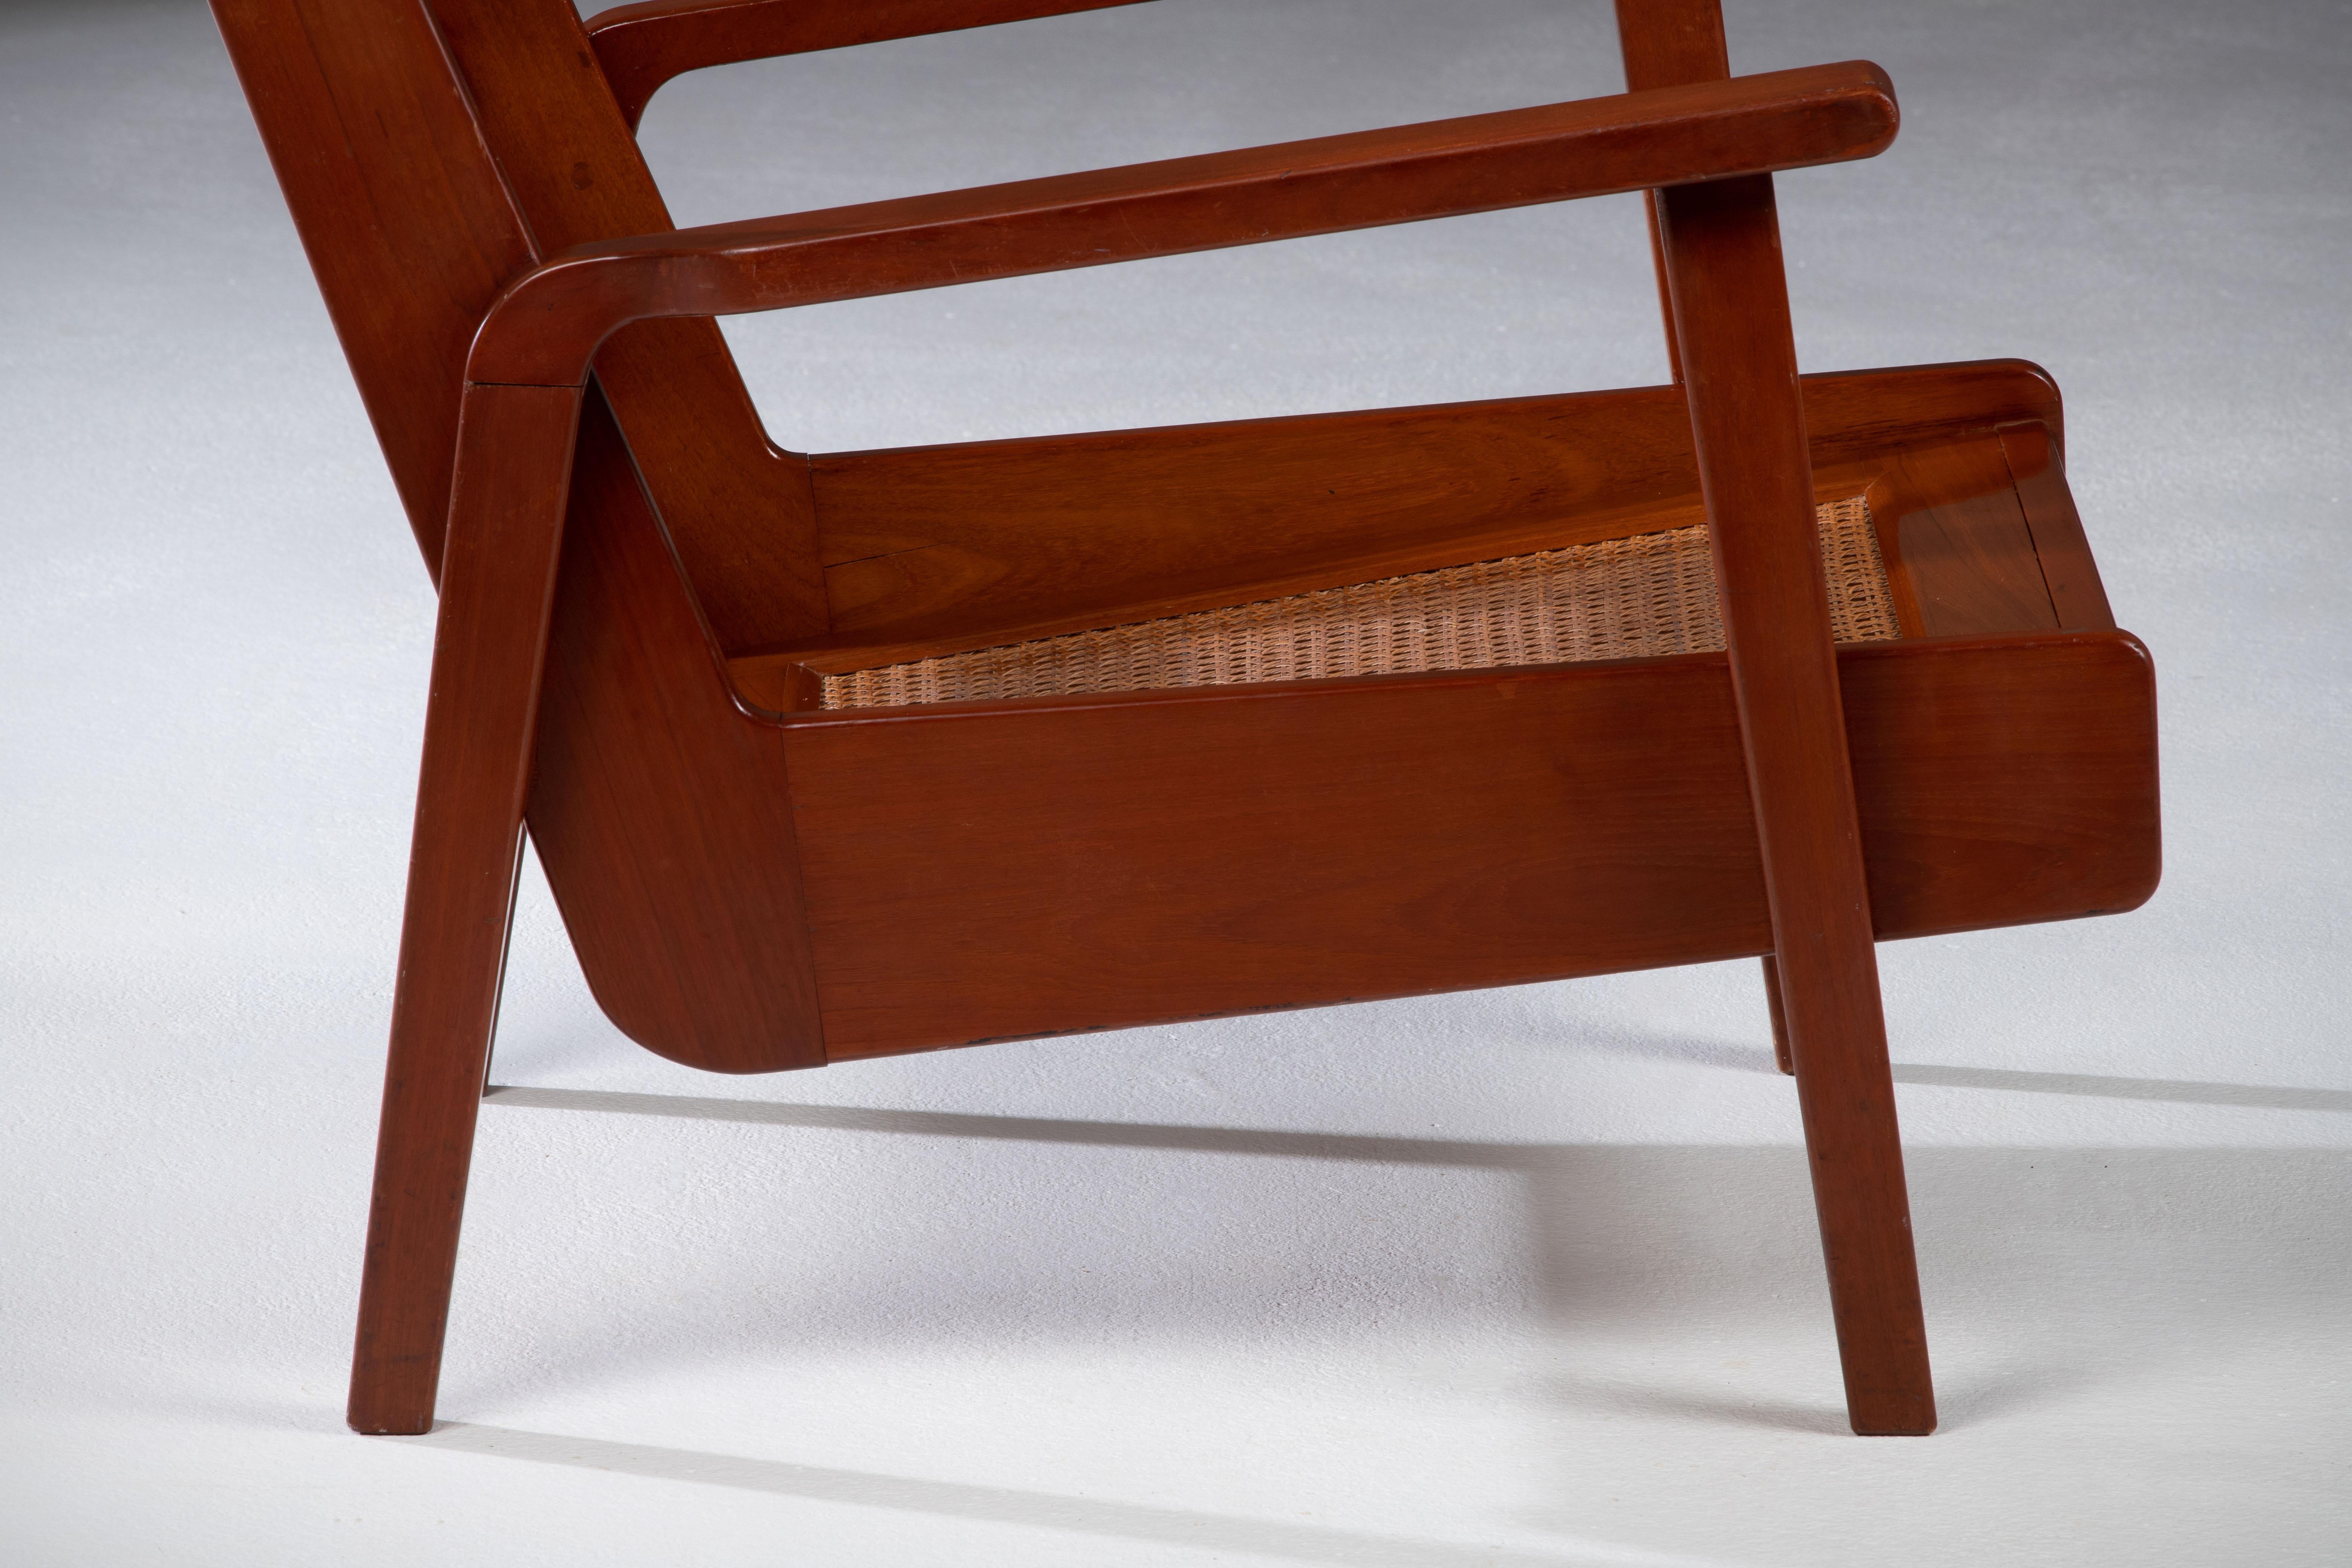 Einzigartiger Sessel, 1940, modernistisches Nachkriegsdesign.
Struktur aus massivem Mahagoni, Sitz und Rückenlehne aus originalem Rohrgeflecht.
